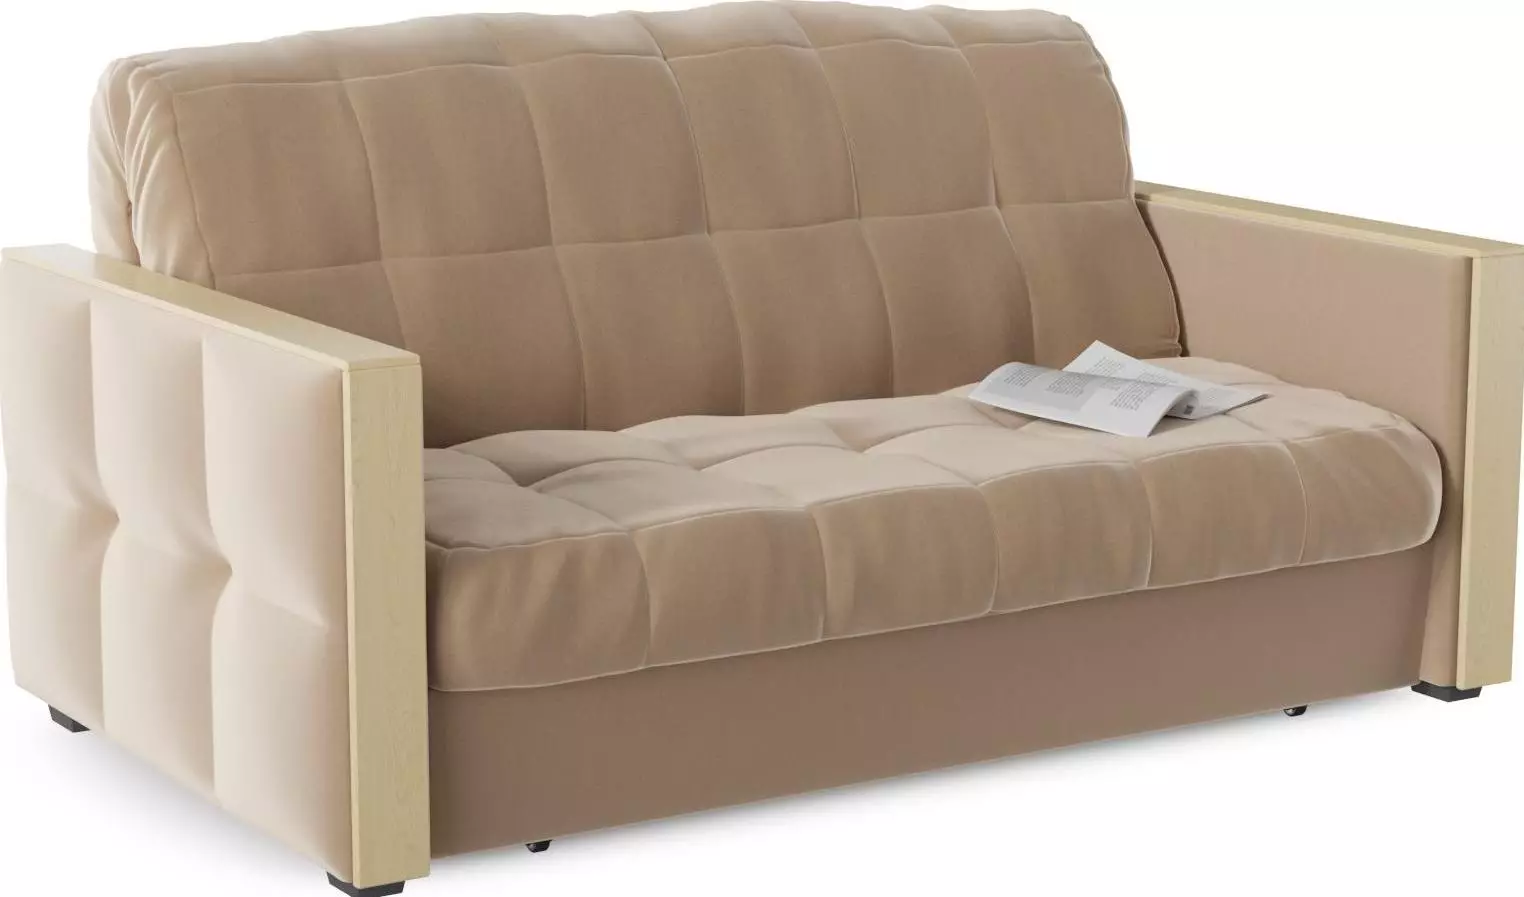 Sofa-Accordion on ლითონის ჩარჩო: ორთოპედიული ლეიბები და დამოუკიდებელი წყაროები, ერთად ყუთი თეთრეული და სხვები, ქარხნები 9117_21